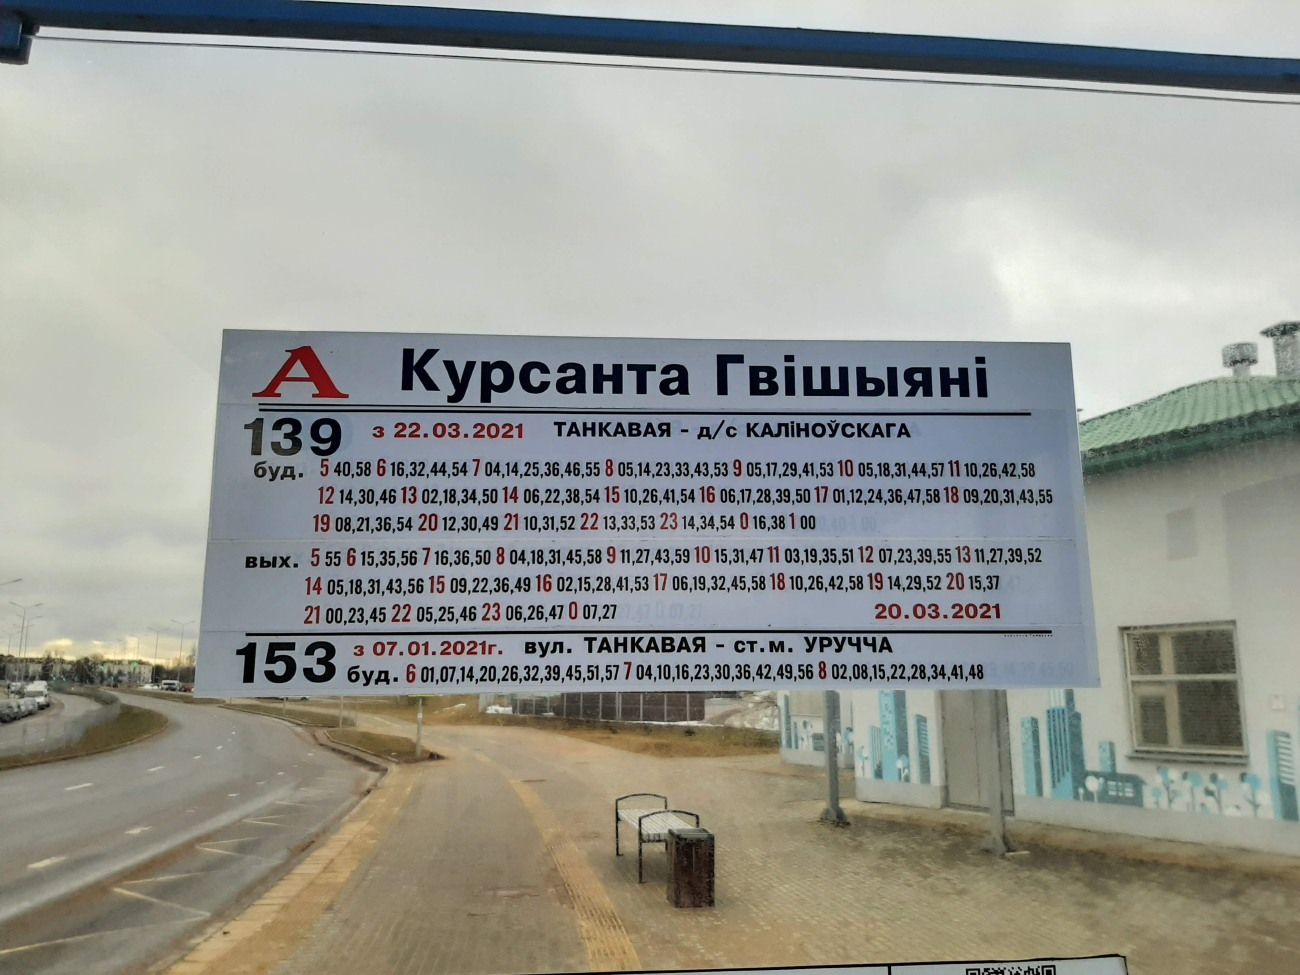 Минск — Расписания и остановочные таблички